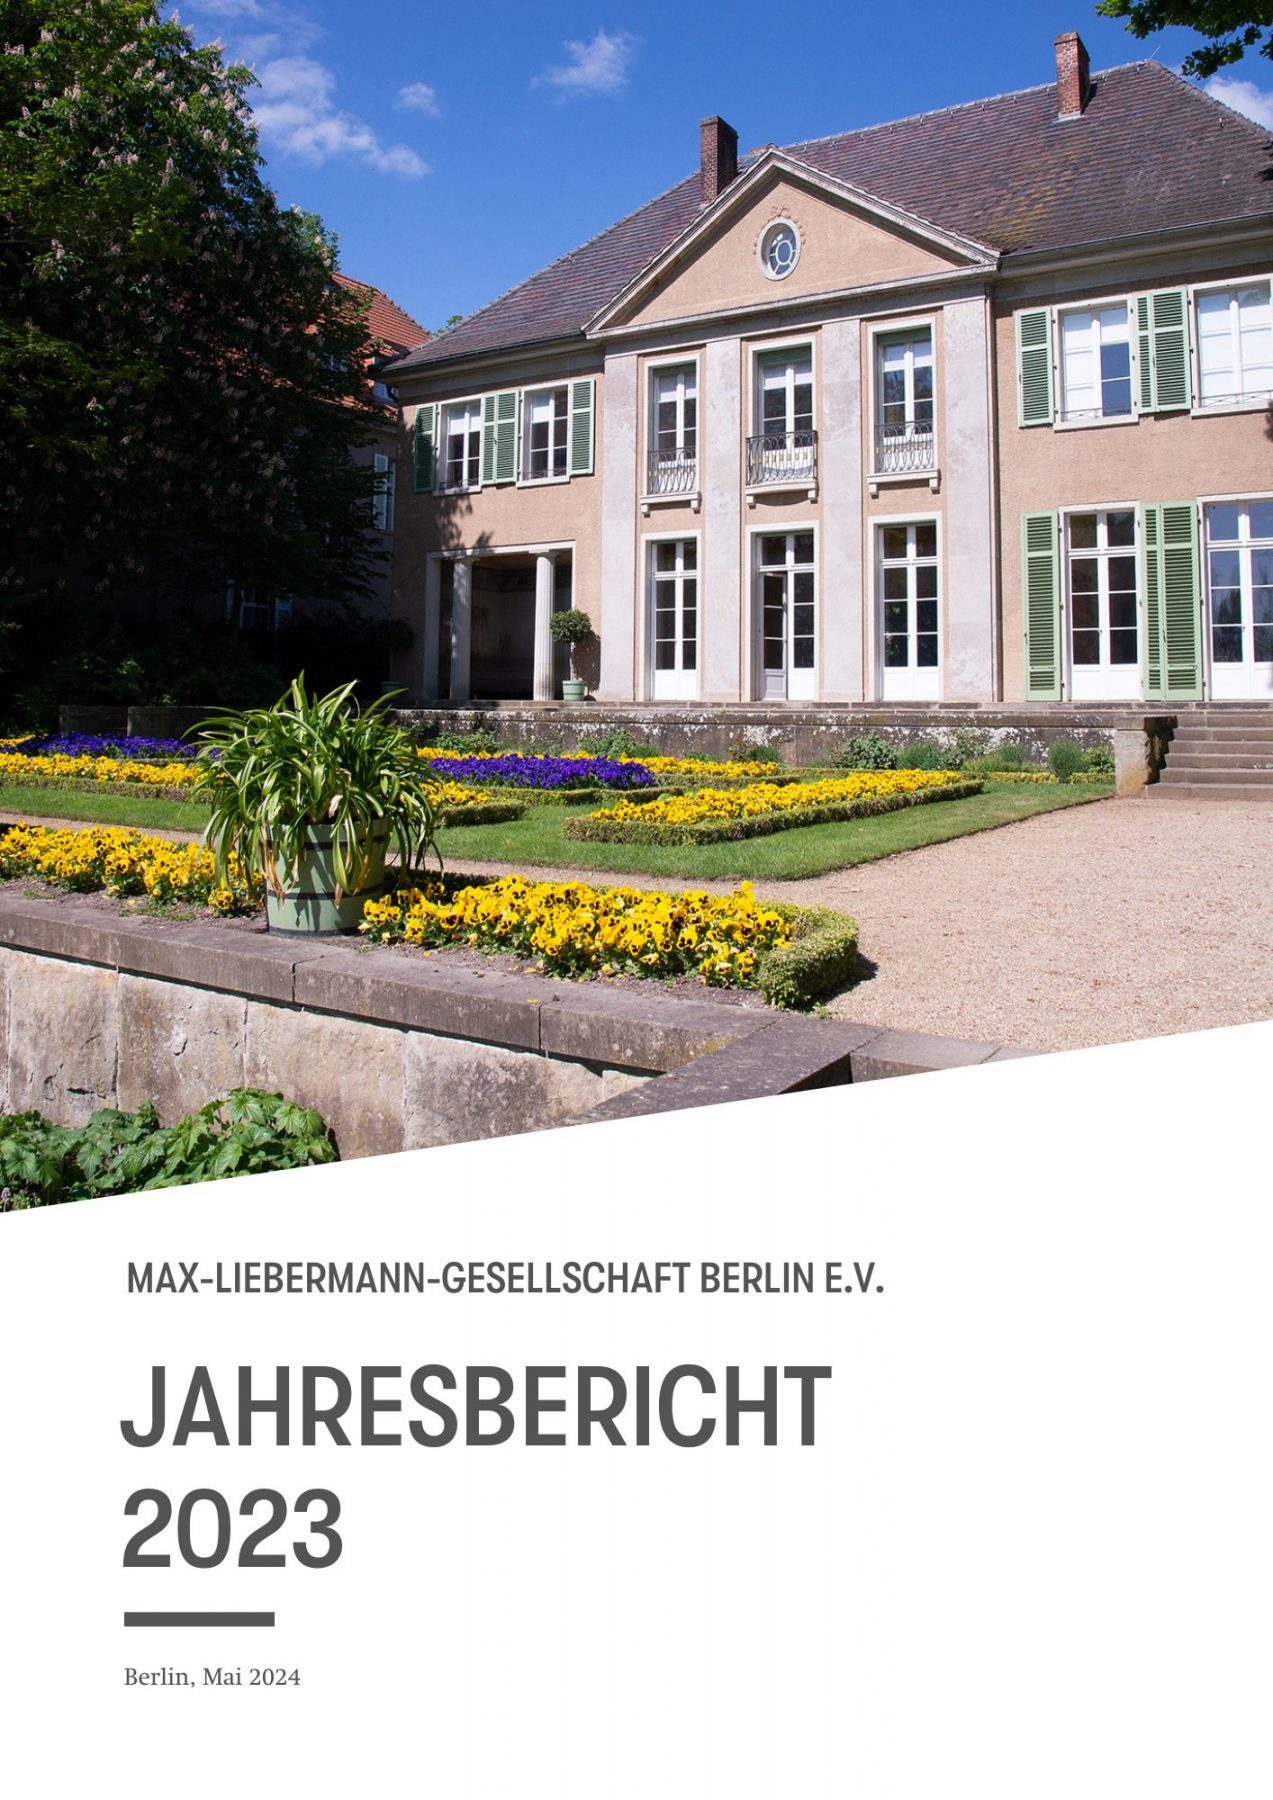 Jahresbericht der Max-Liebermann-Gesellschaft Berlin e.V., 2023